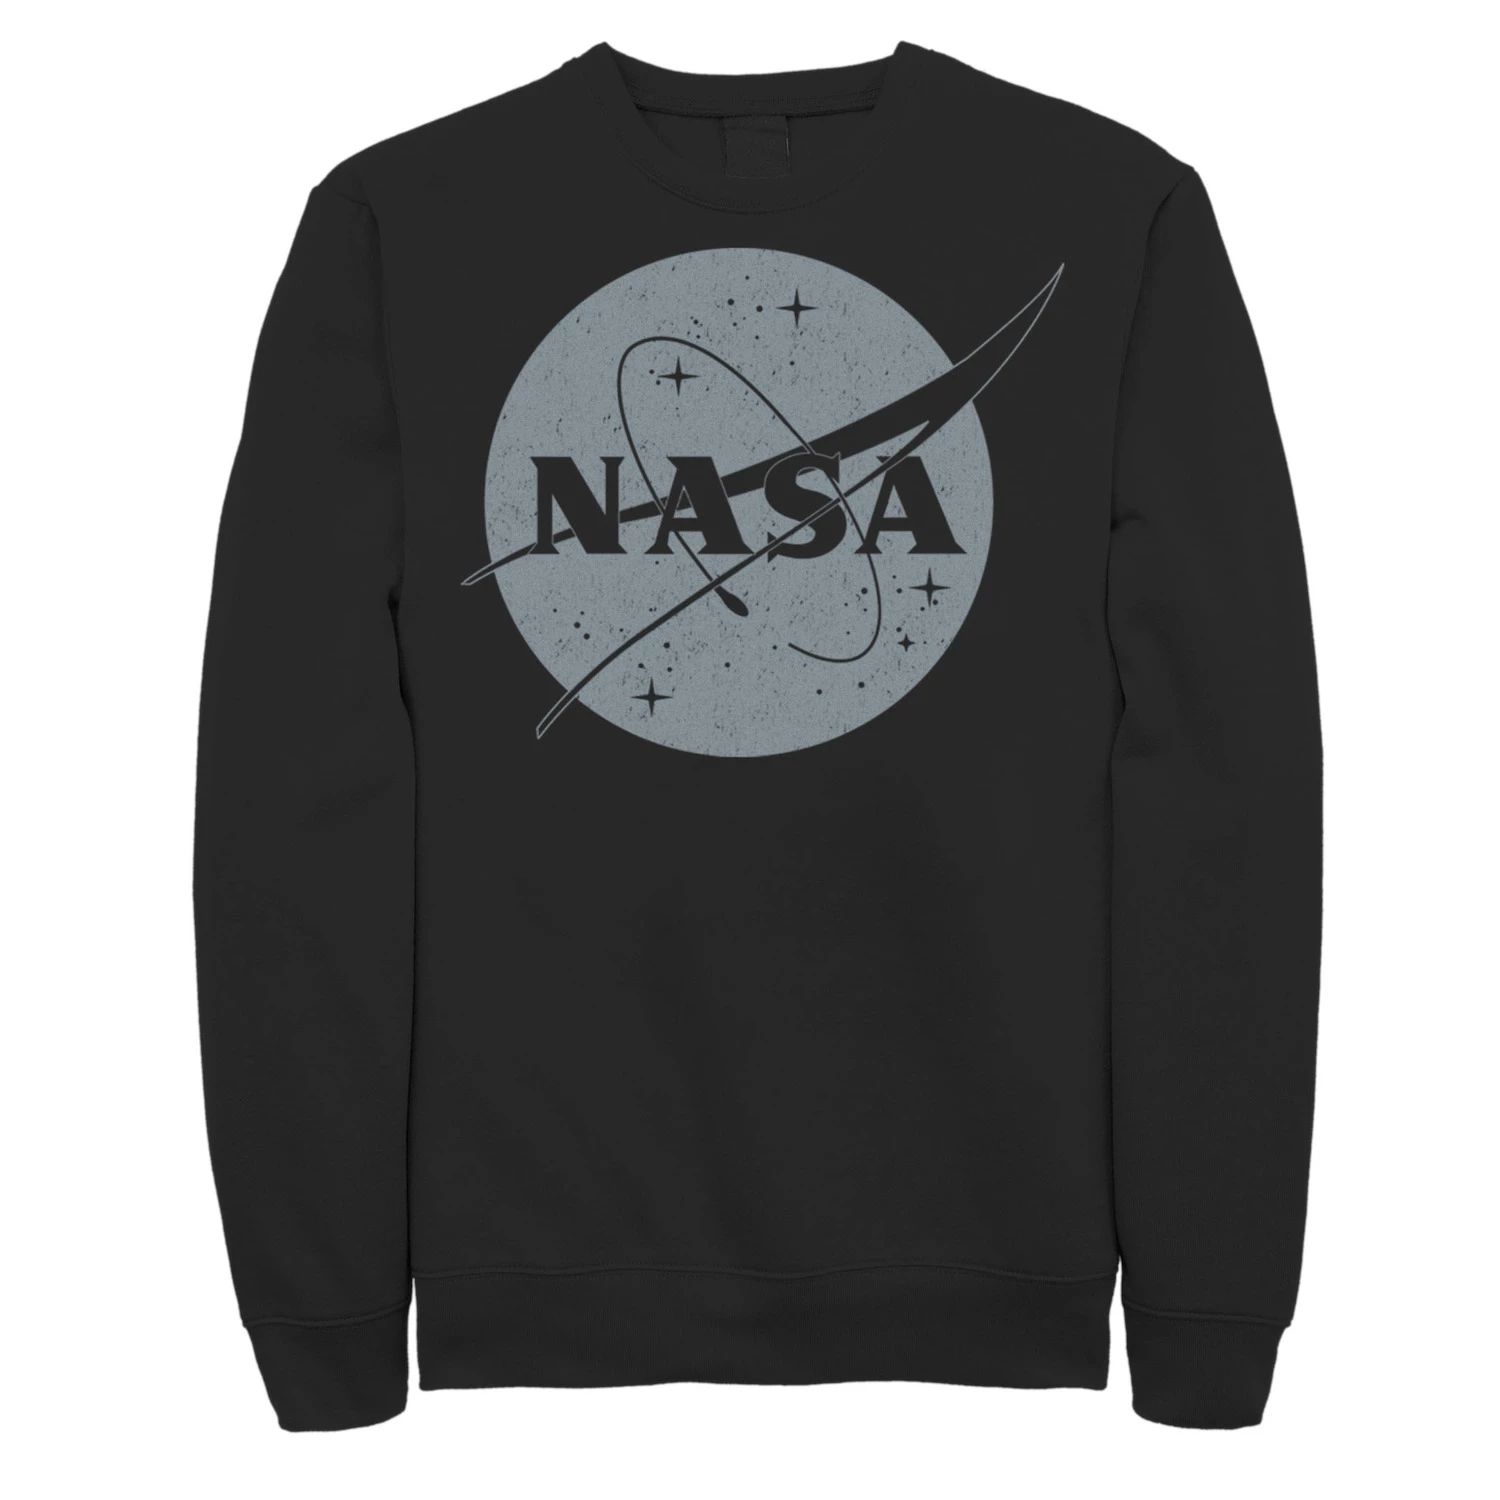 Мужской простой классический флисовый пуловер с круглым логотипом NASA Licensed Character